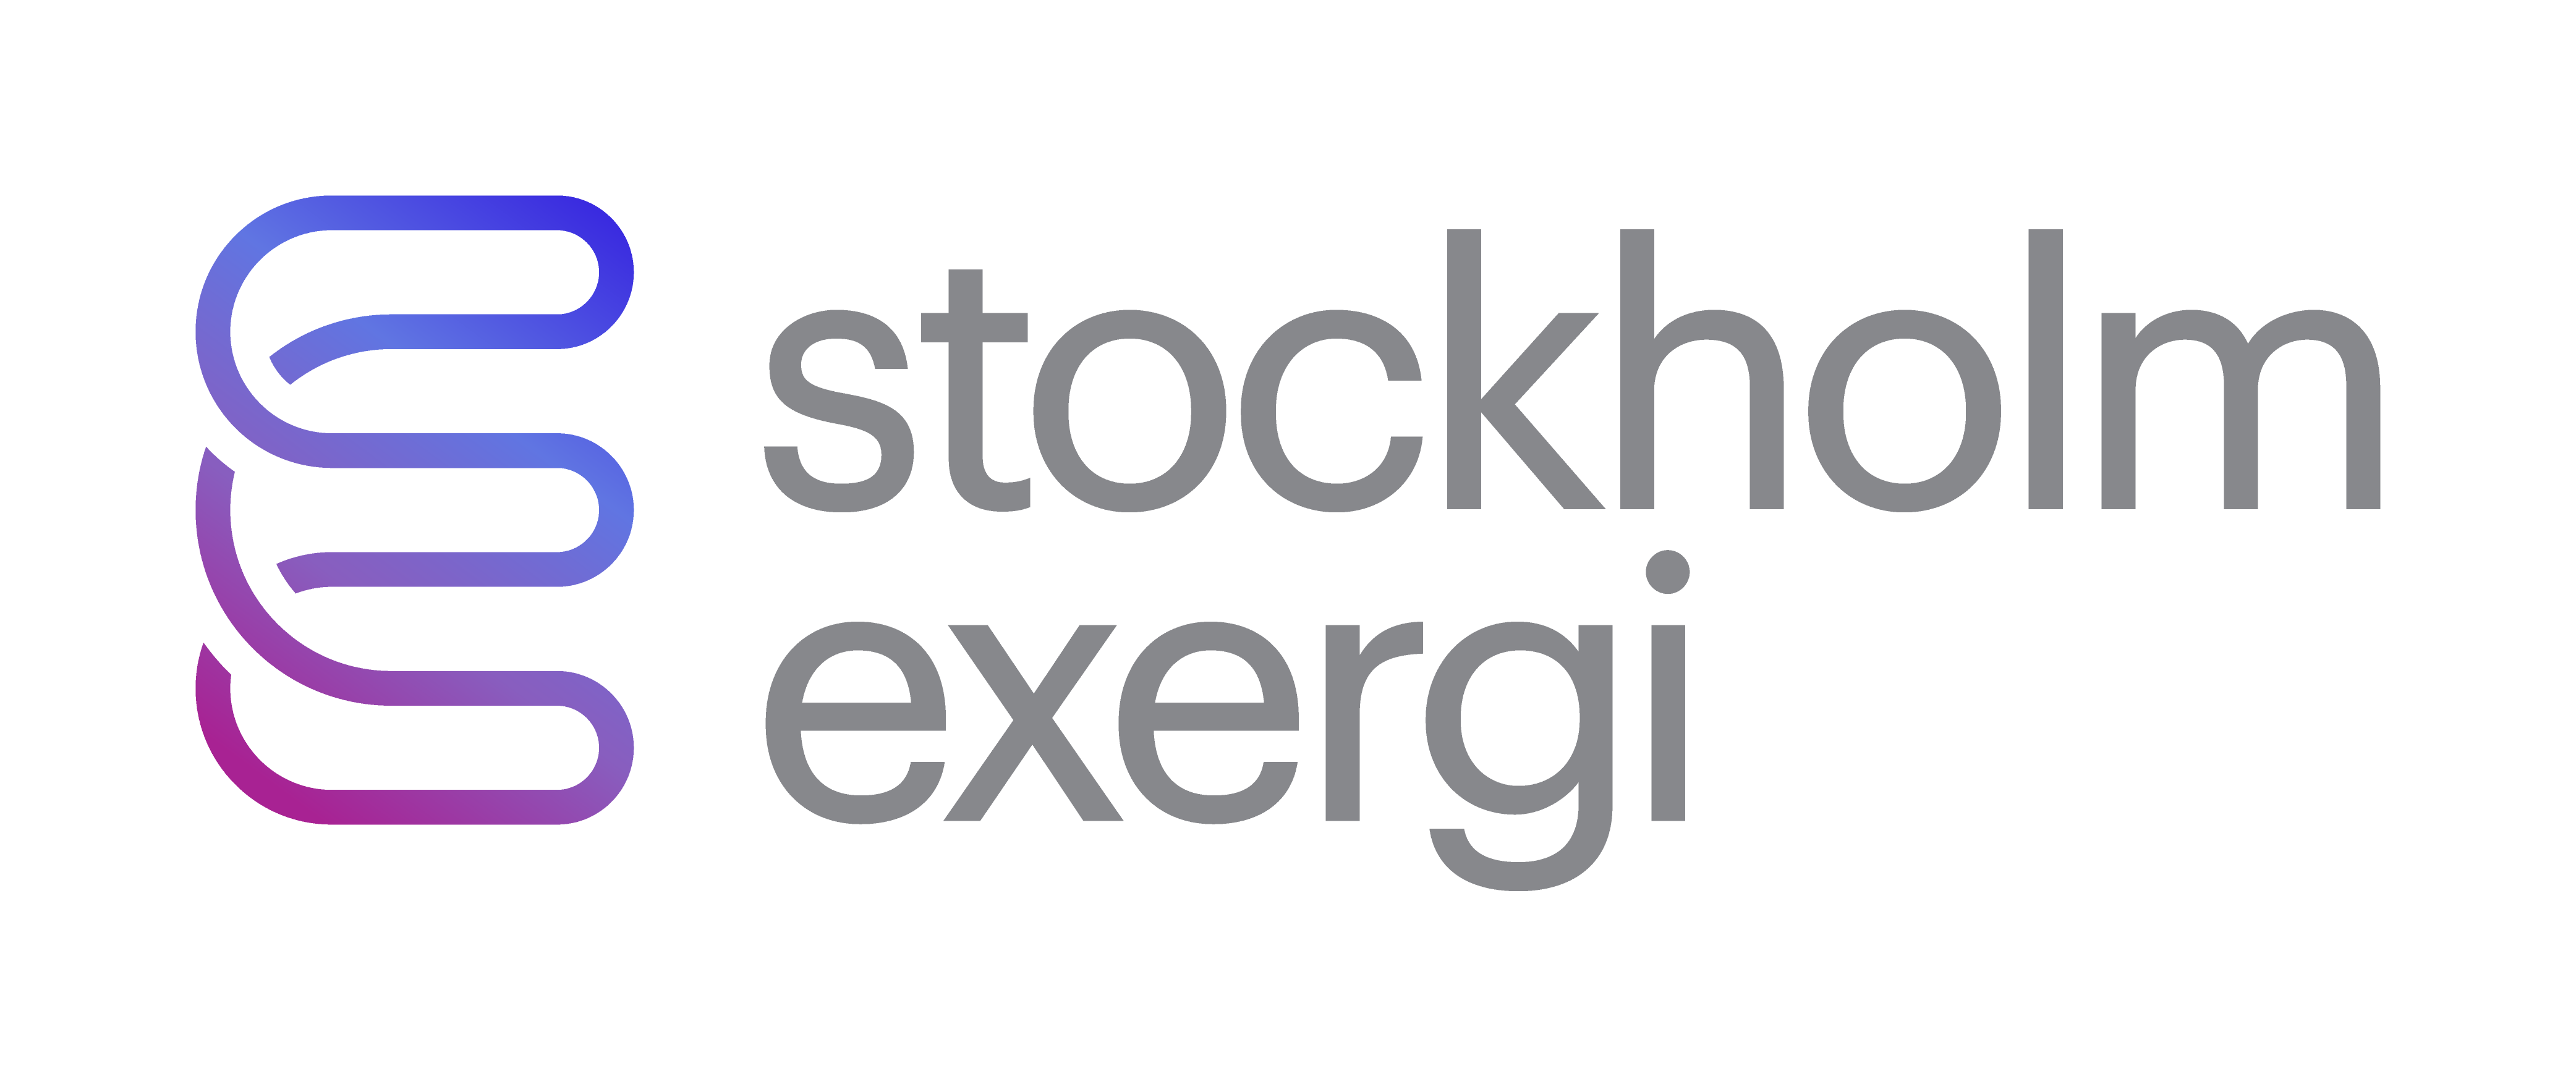 www.stockholmexergi.se